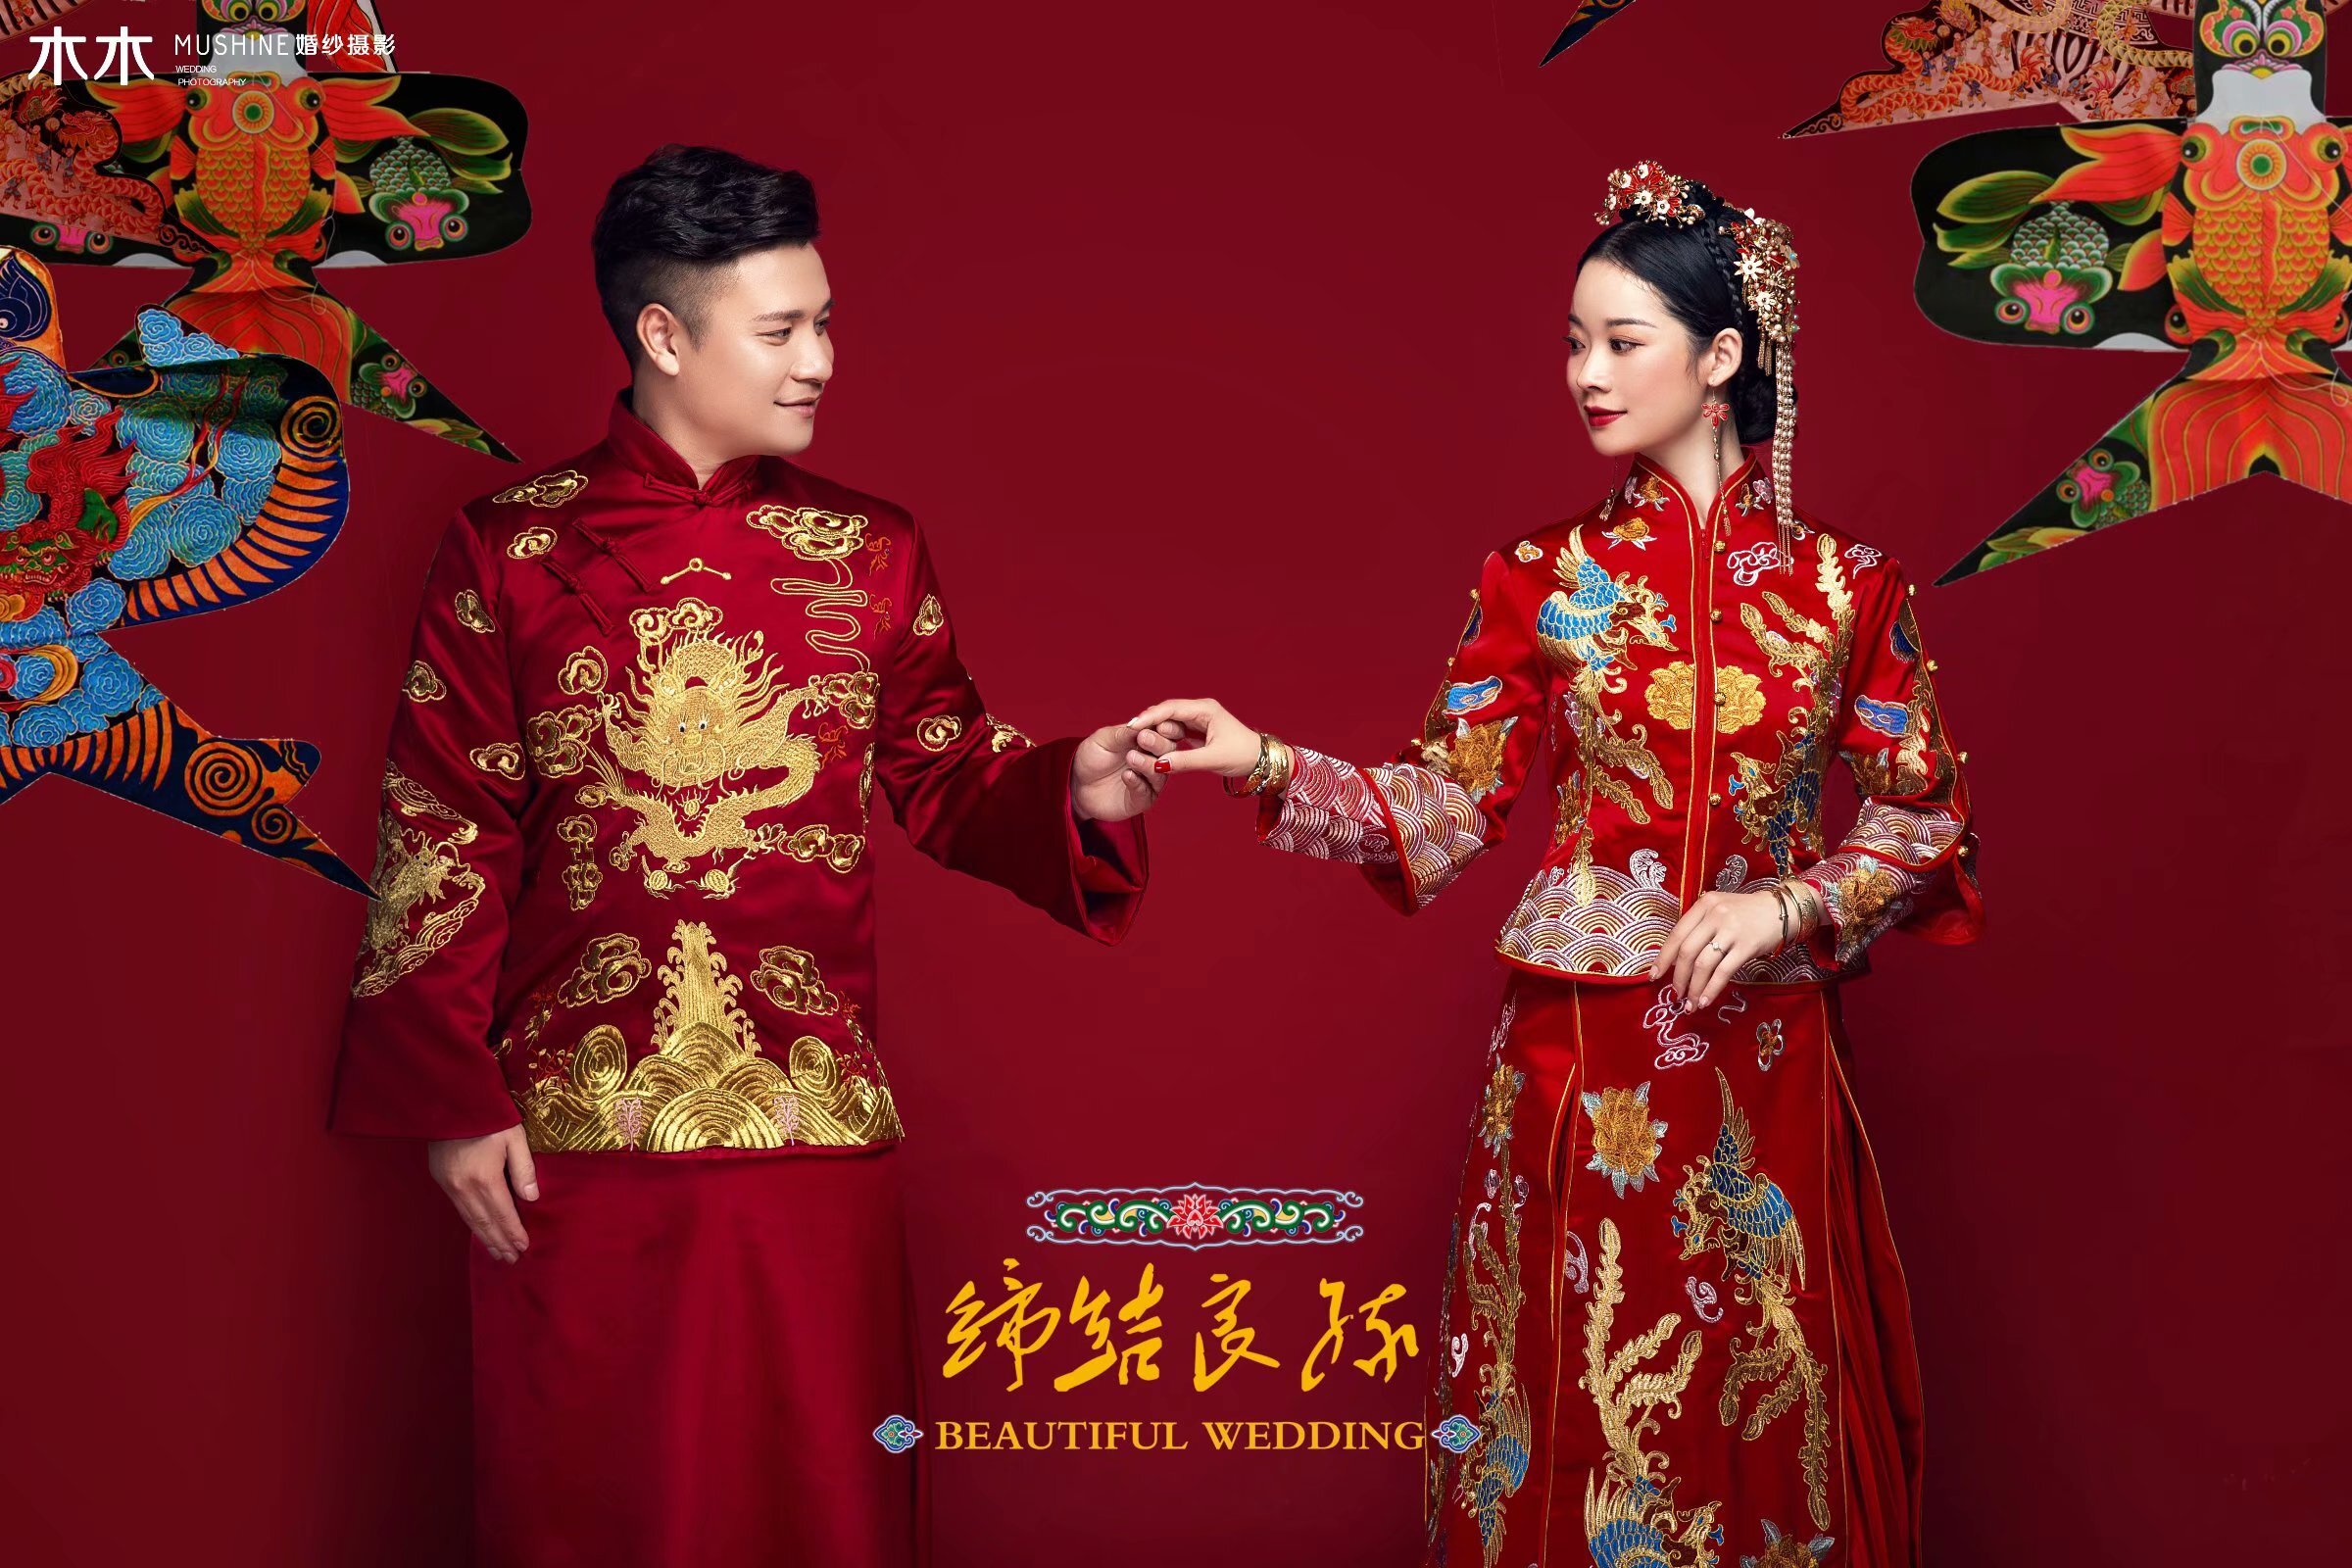 中国拍婚纱照前十名图片